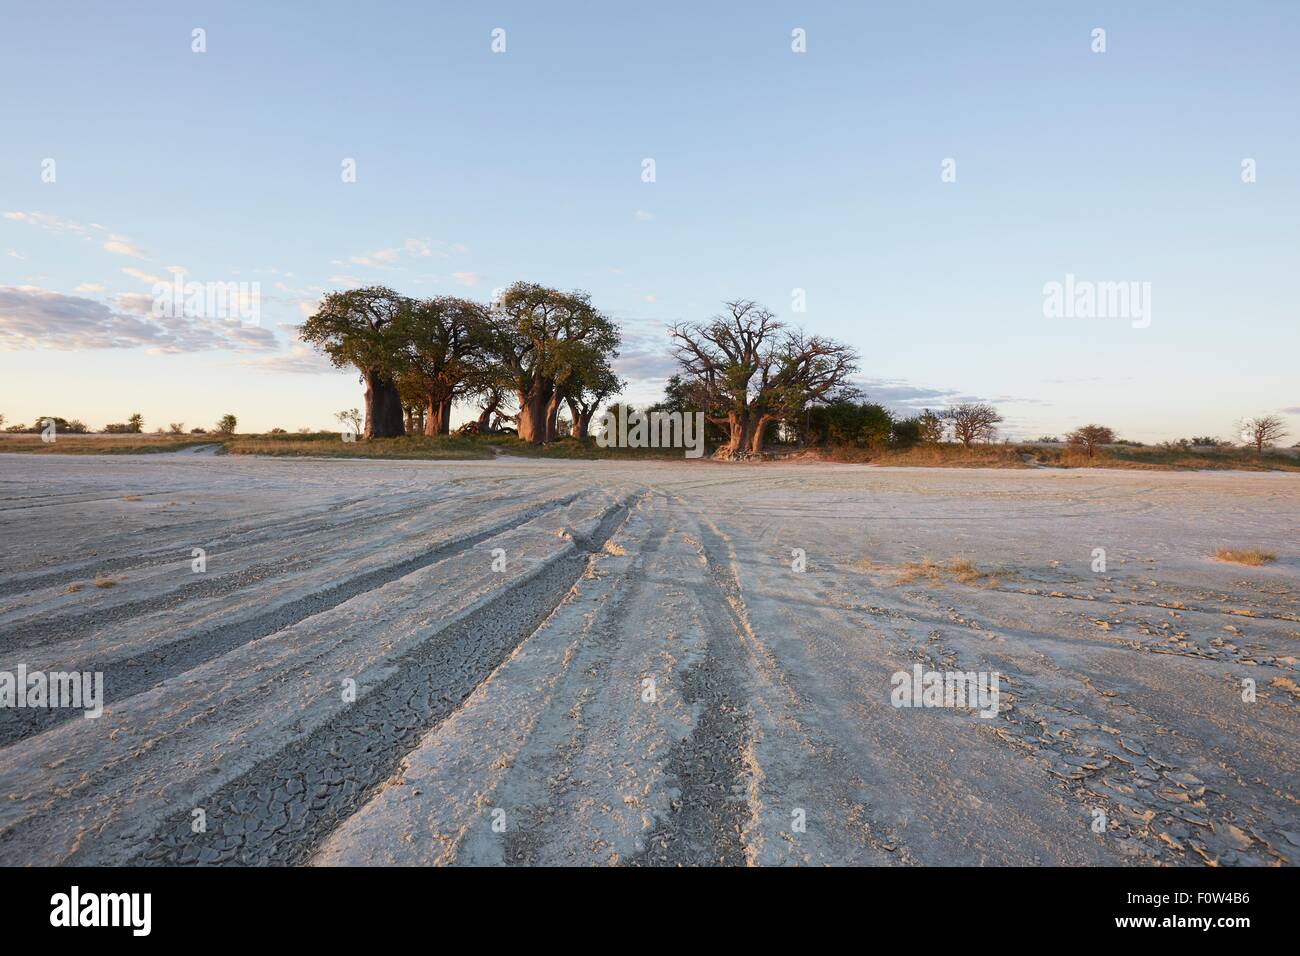 Nxai Pan National Park by day, Kalahari Desert, Africa Stock Photo